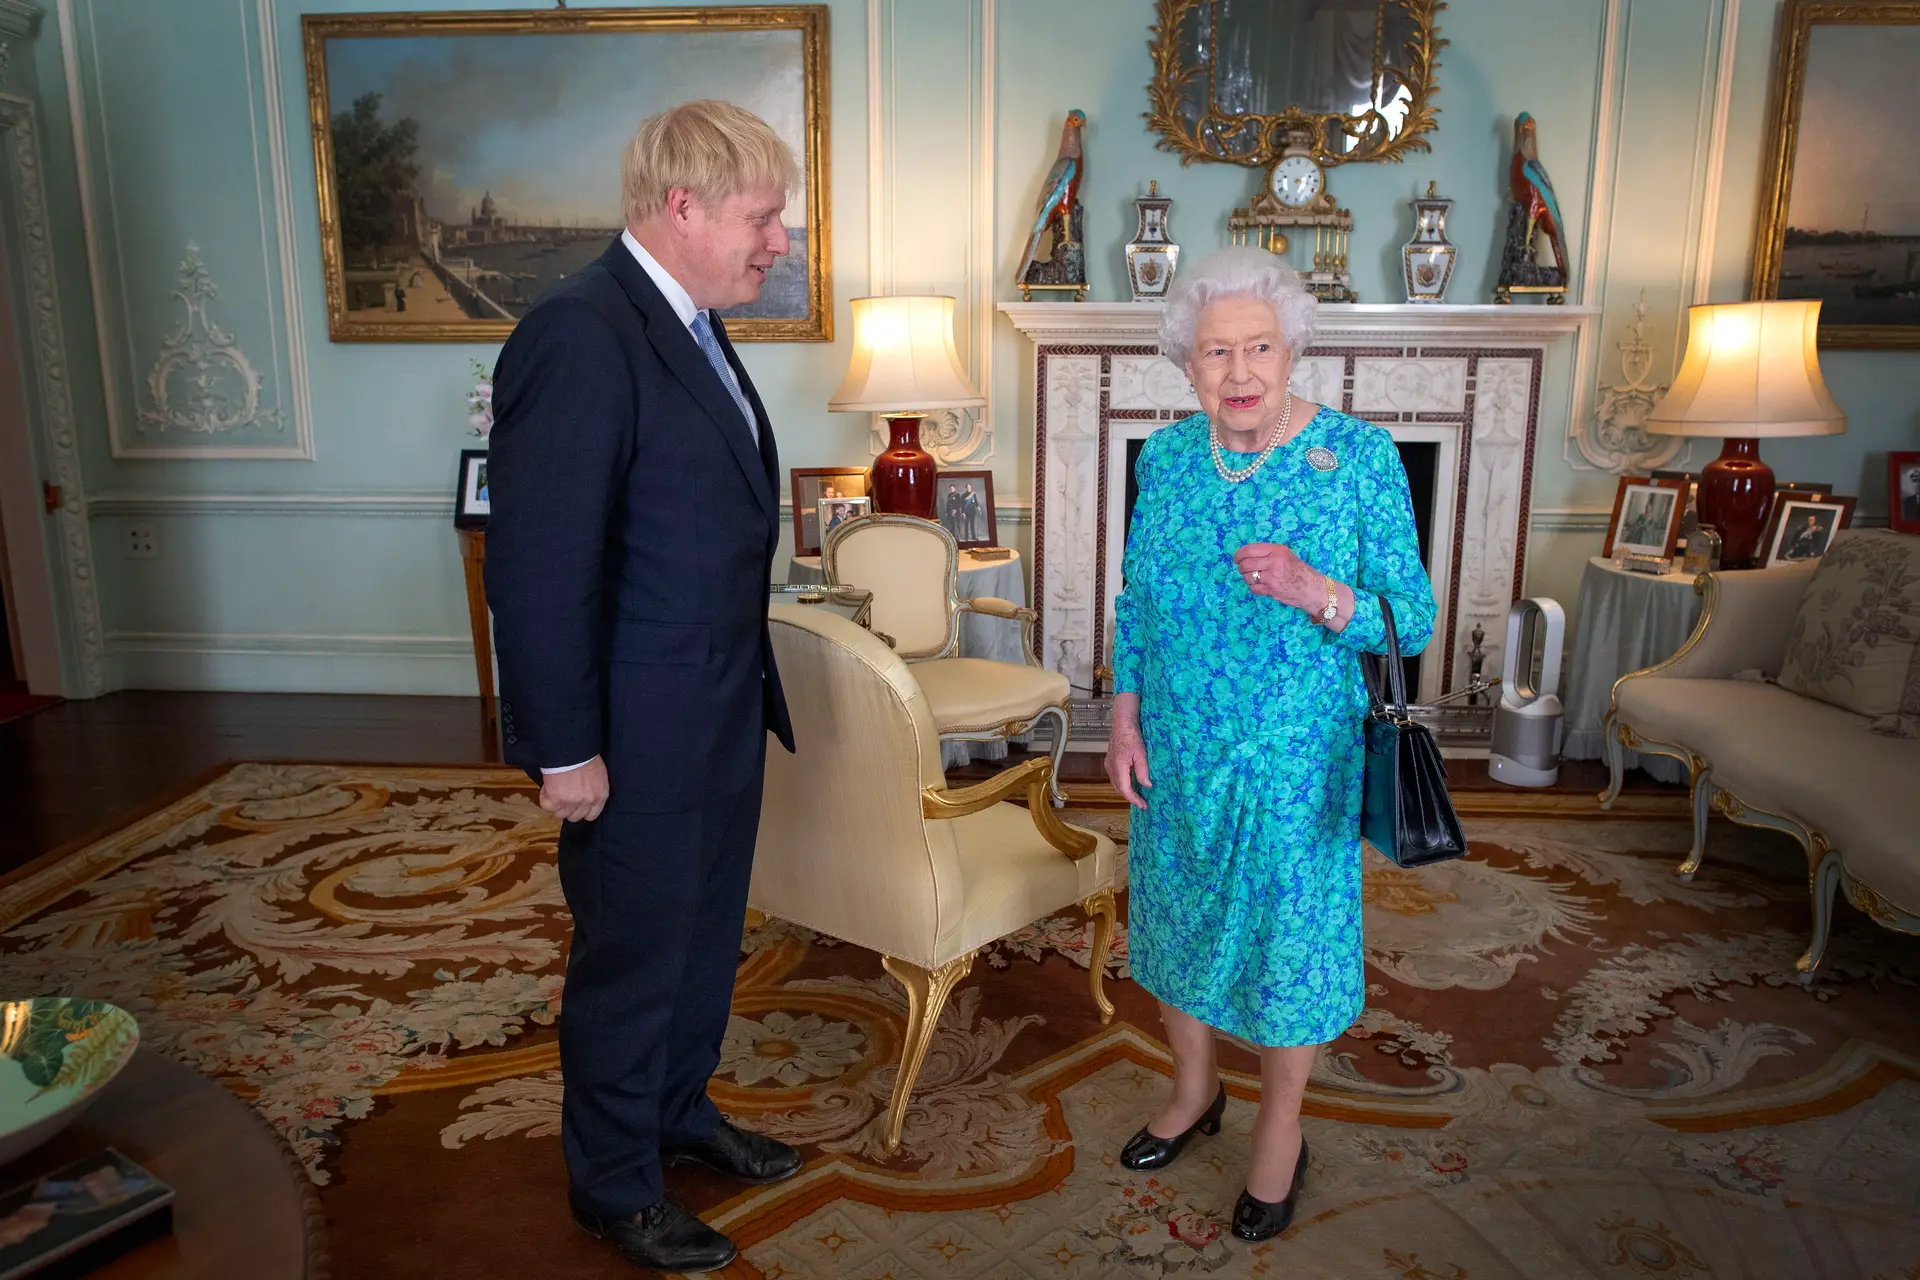 Boris Johnson com a Rainha Isabel II no Palácio de Buckingham, em 2019